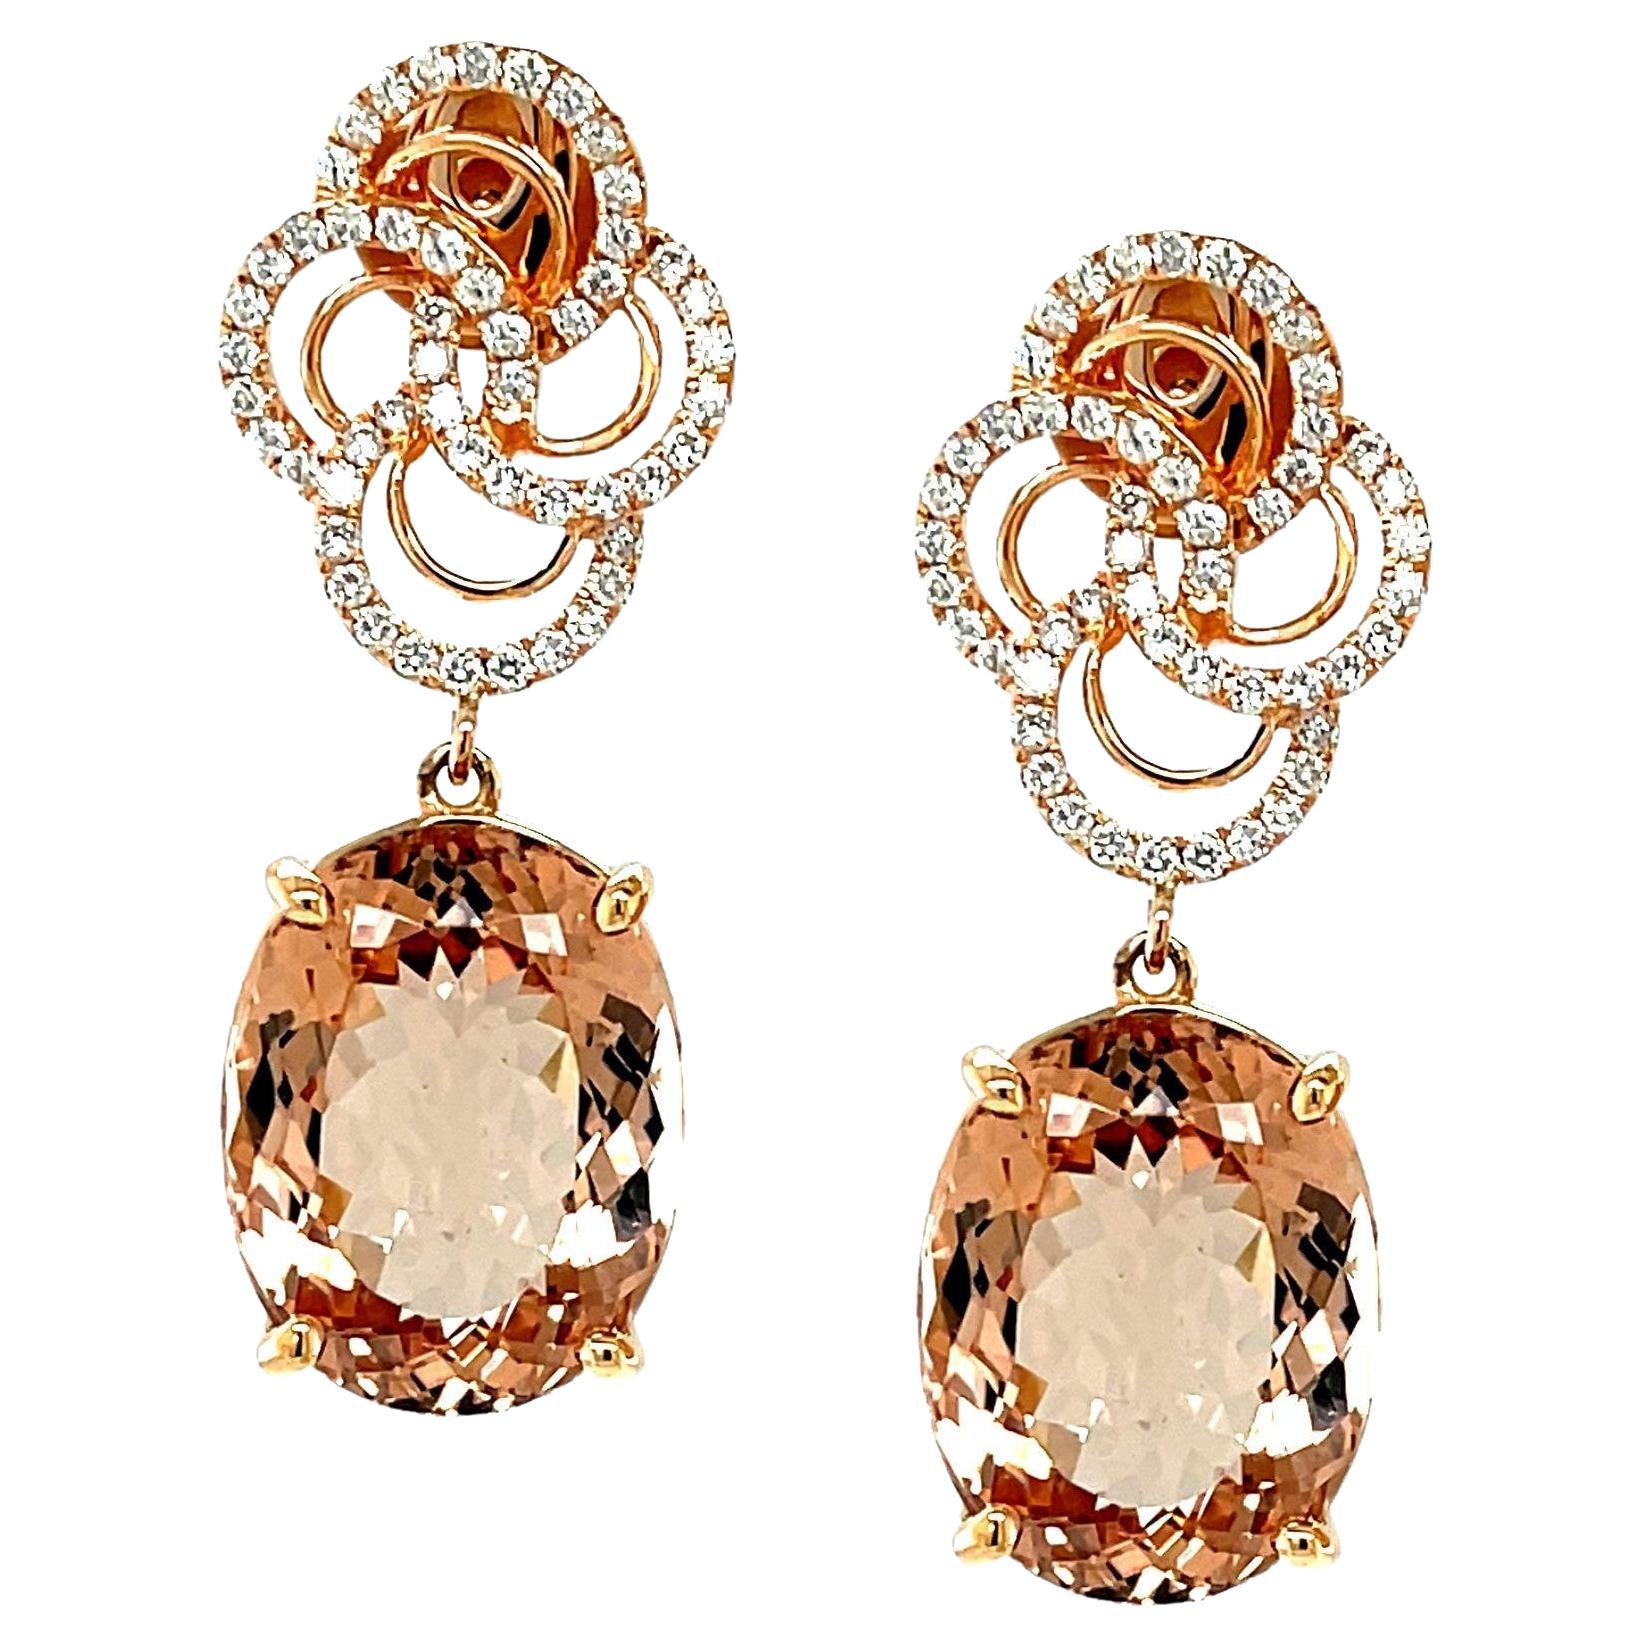 Morganite and Diamond Dangle Earrings in 18k Rose Gold, 23.49 Carats Total 